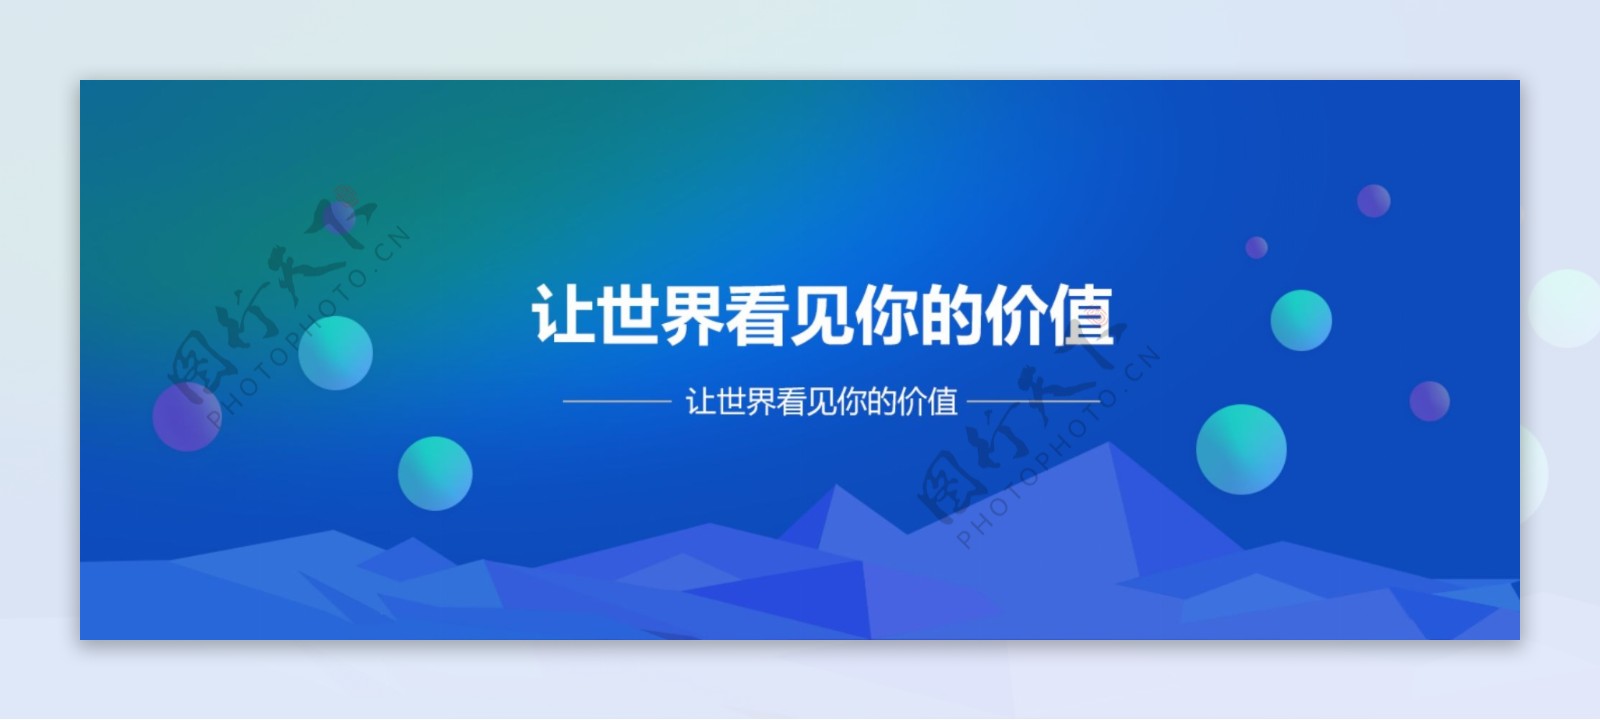 互联网科技公司网站banner高清大图